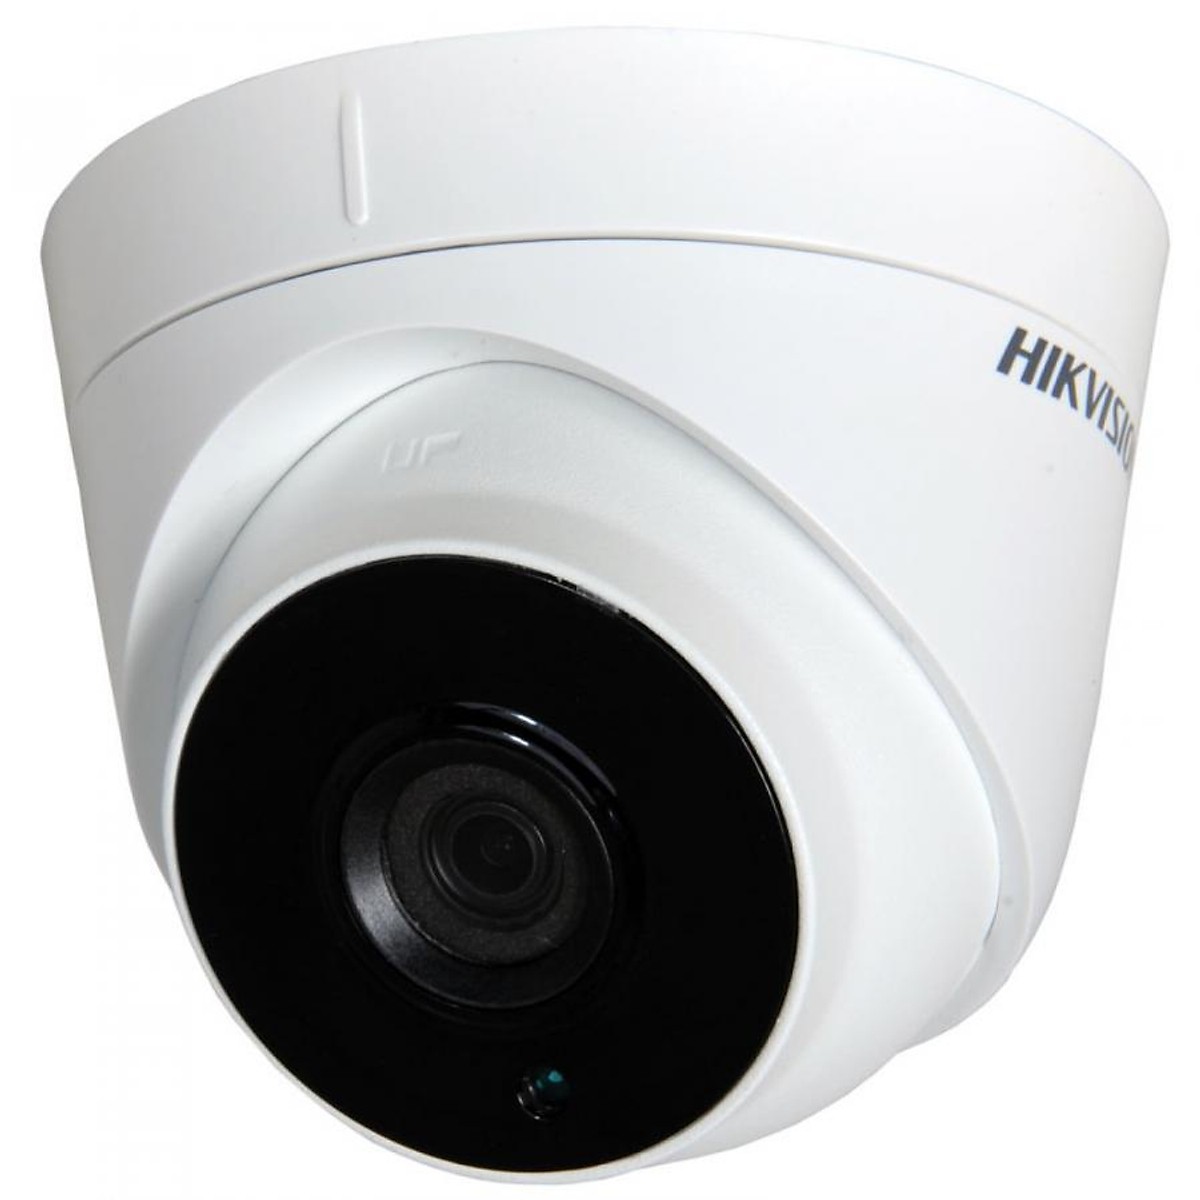 Camera Hikvision DS-2CE56D0T-IT3